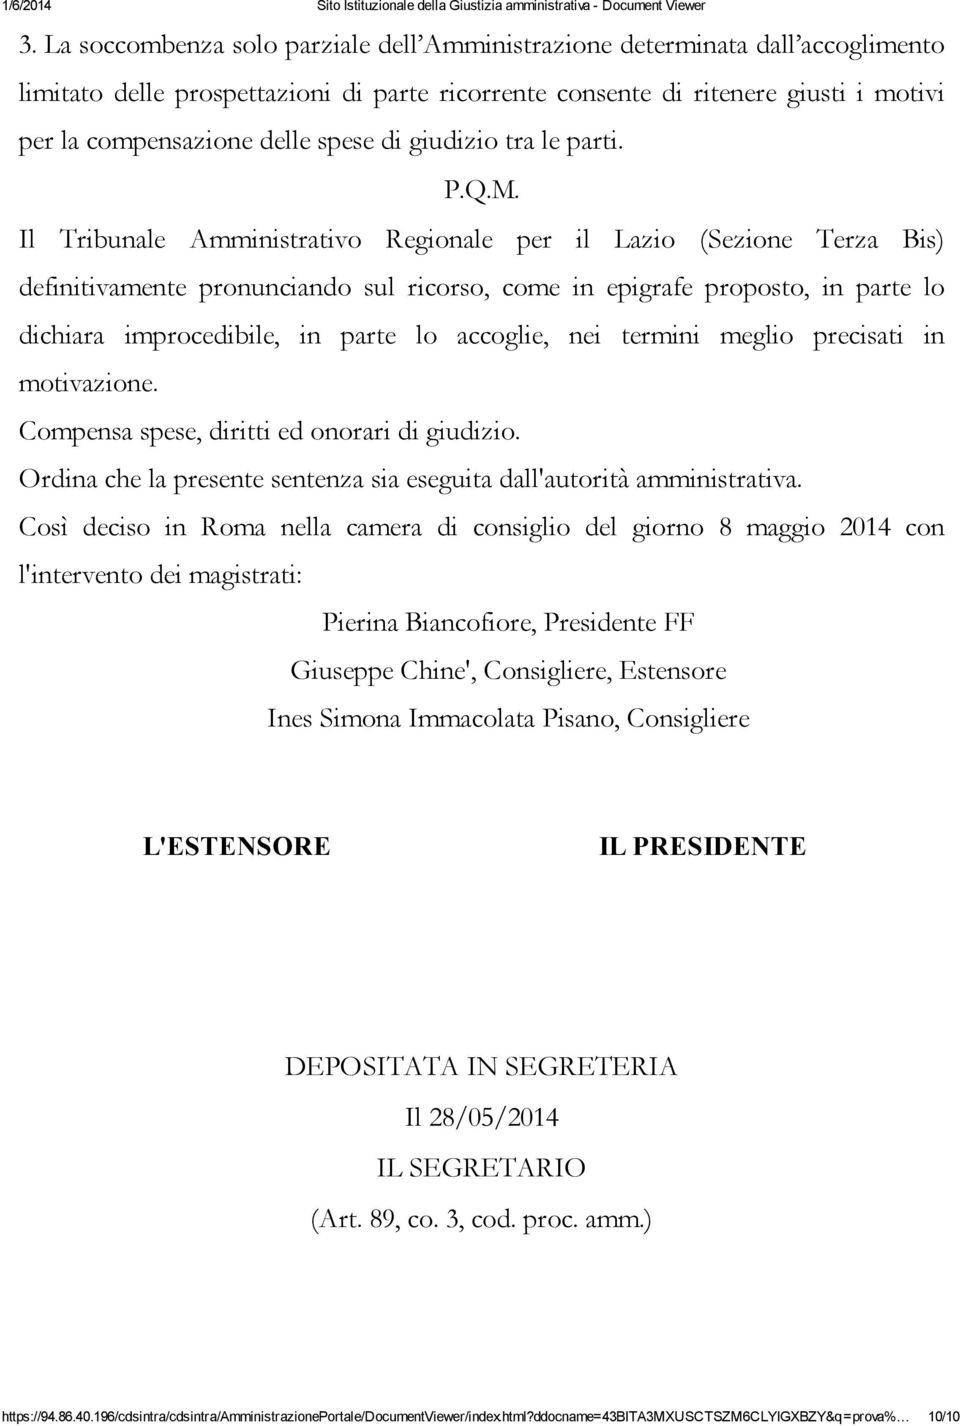 Il Tribunale Amministrativo Regionale per il Lazio (Sezione Terza Bis) definitivamente pronunciando sul ricorso, come in epigrafe proposto, in parte lo dichiara improcedibile, in parte lo accoglie,